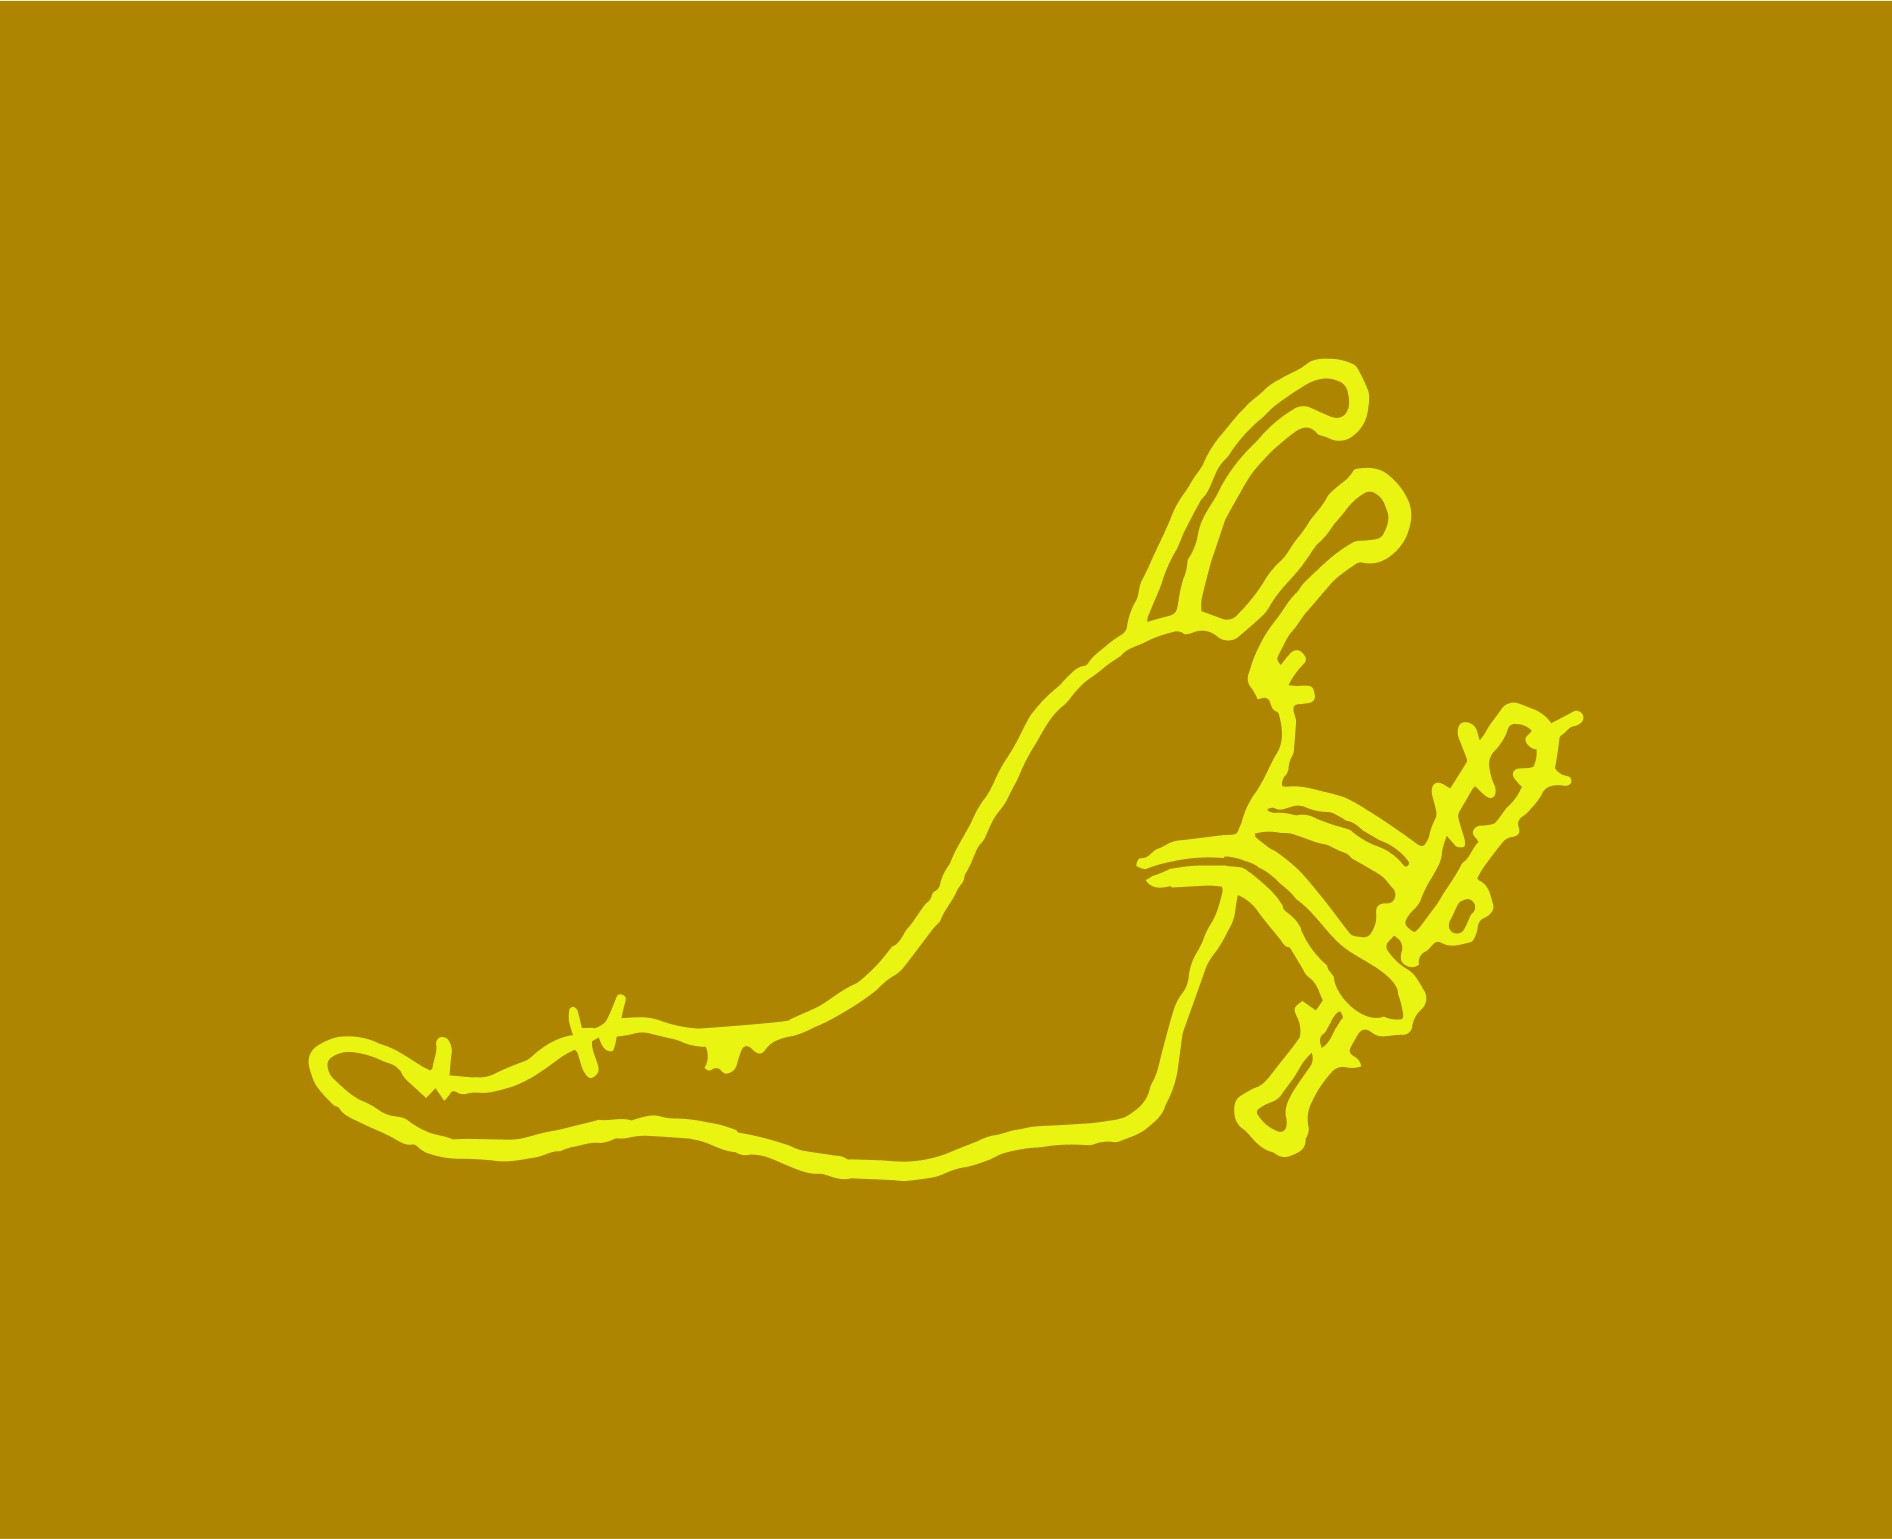 Slug with a club illustration